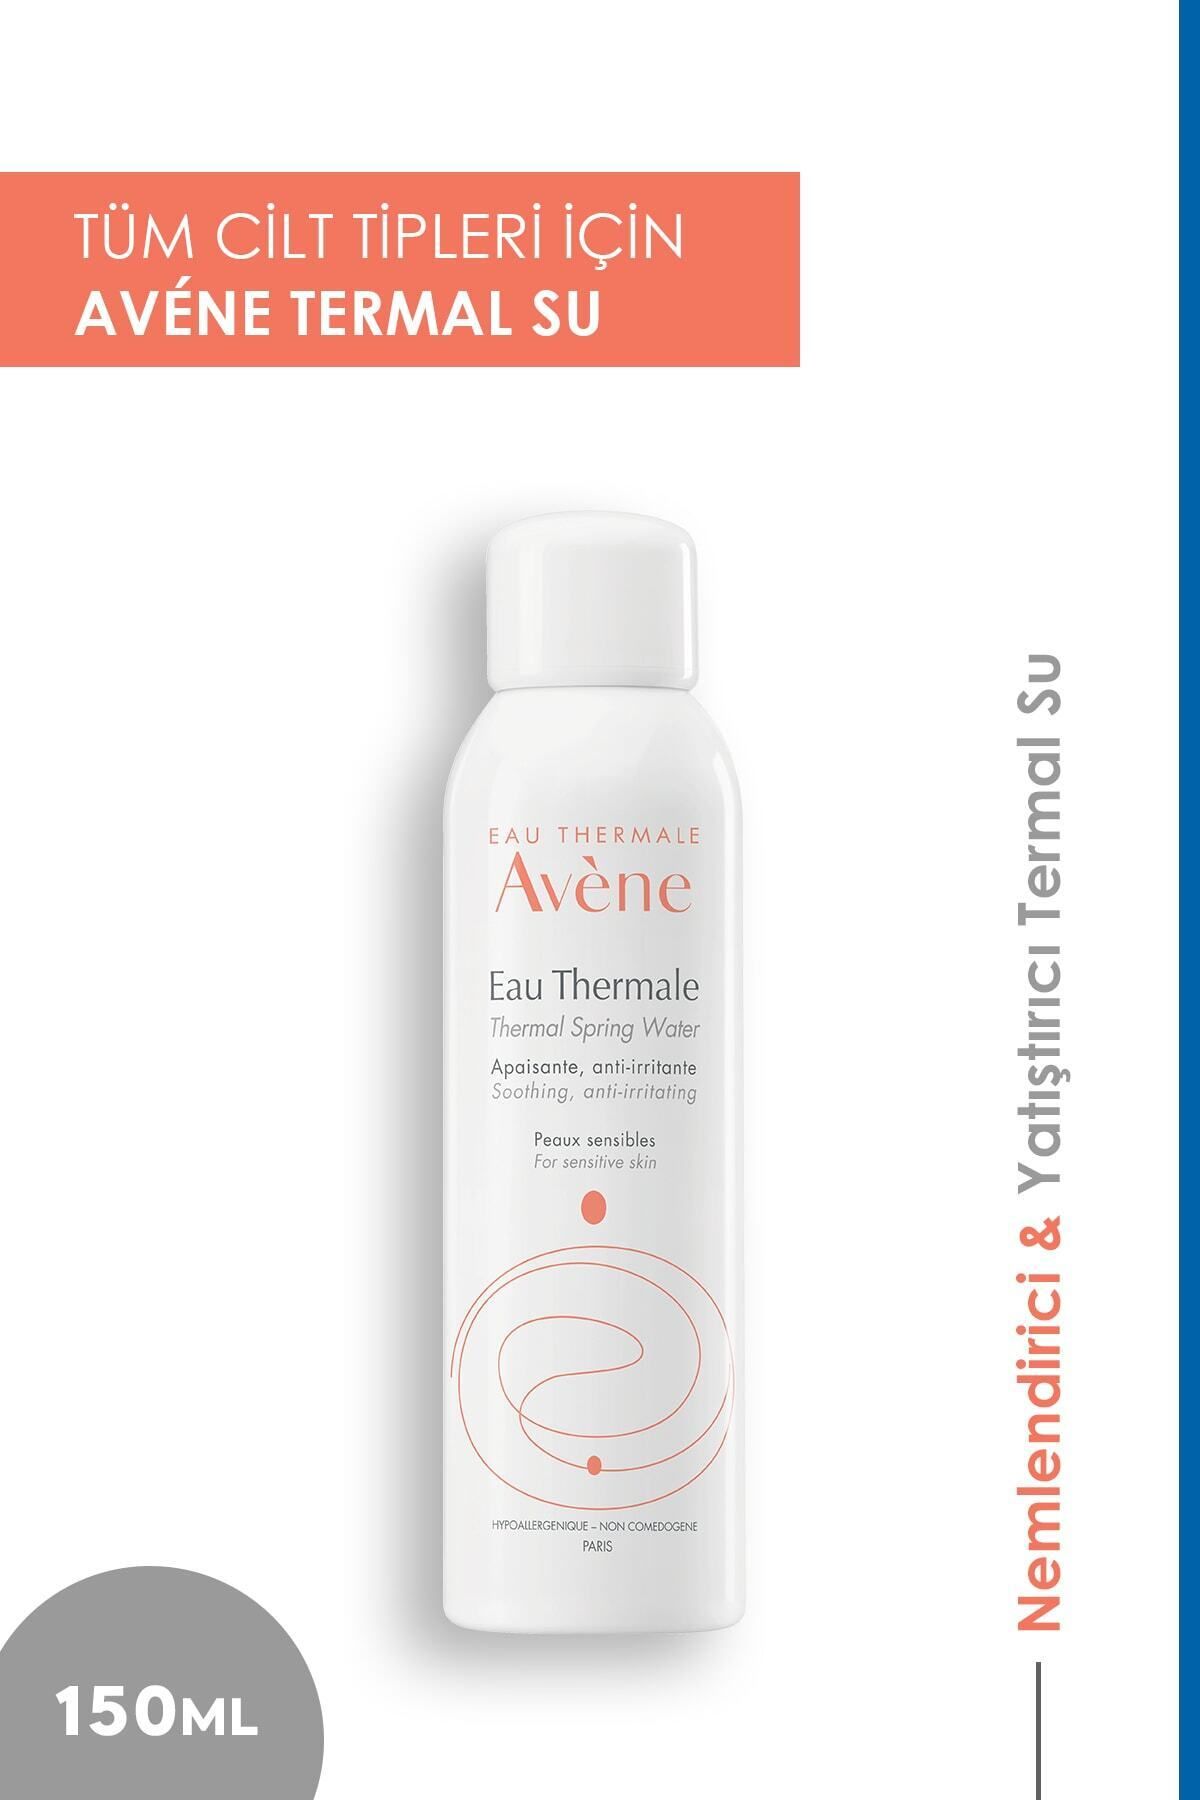 Avene Avène Tüm Cilt Tipleri İçin Kullanıma Uygun Yatıştırıcı, Rahatlatıcı Orta Boy Termal Su 150 ml